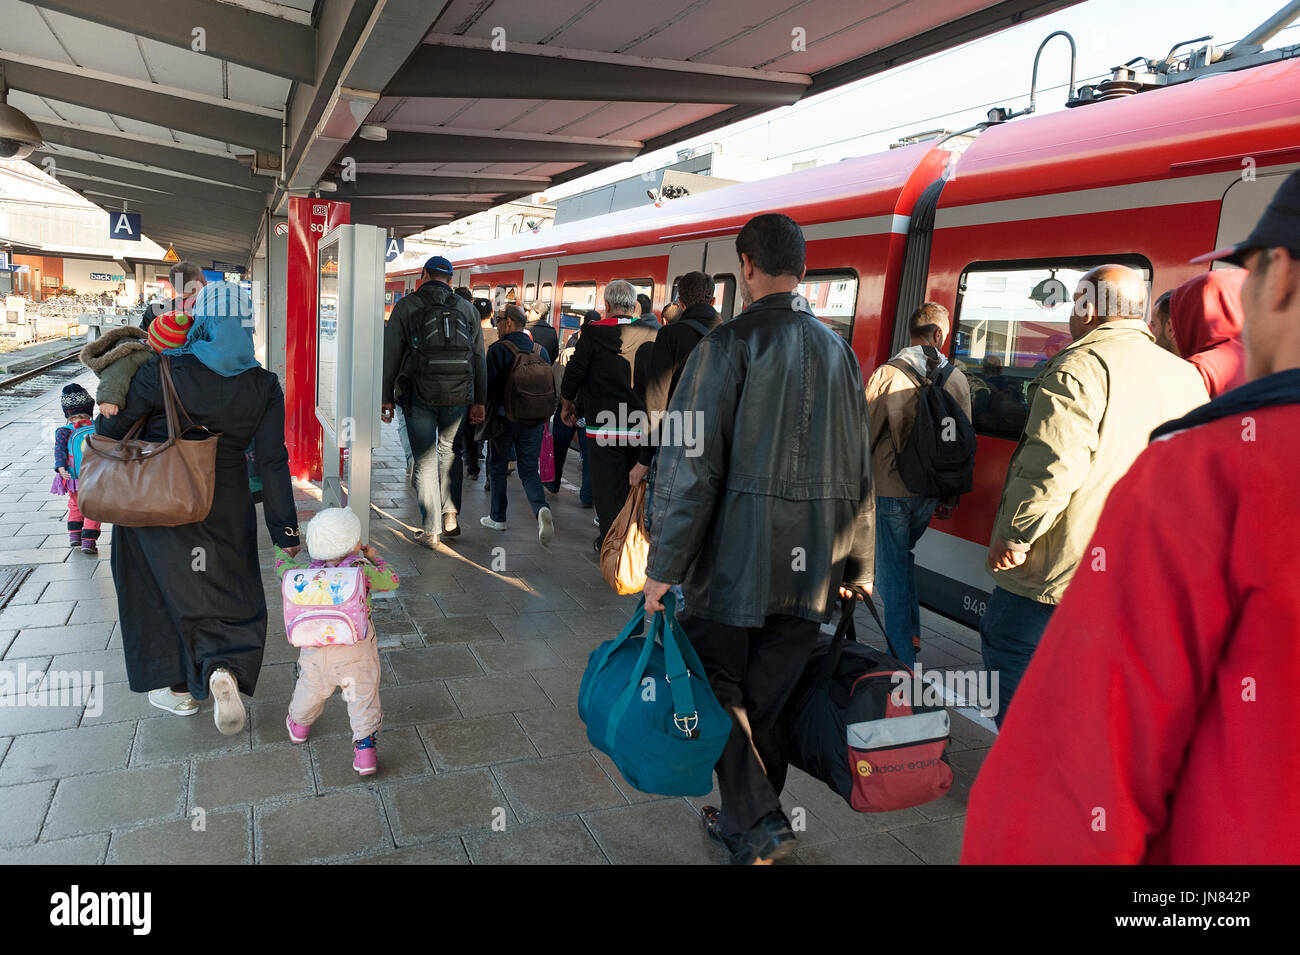 Munich, Alemania - 10 de septiembre de 2015: Los refugiados de Siria, Afganistán y los Balcanes llegando a los trenes en Munich para solicitar asilo. Foto de stock